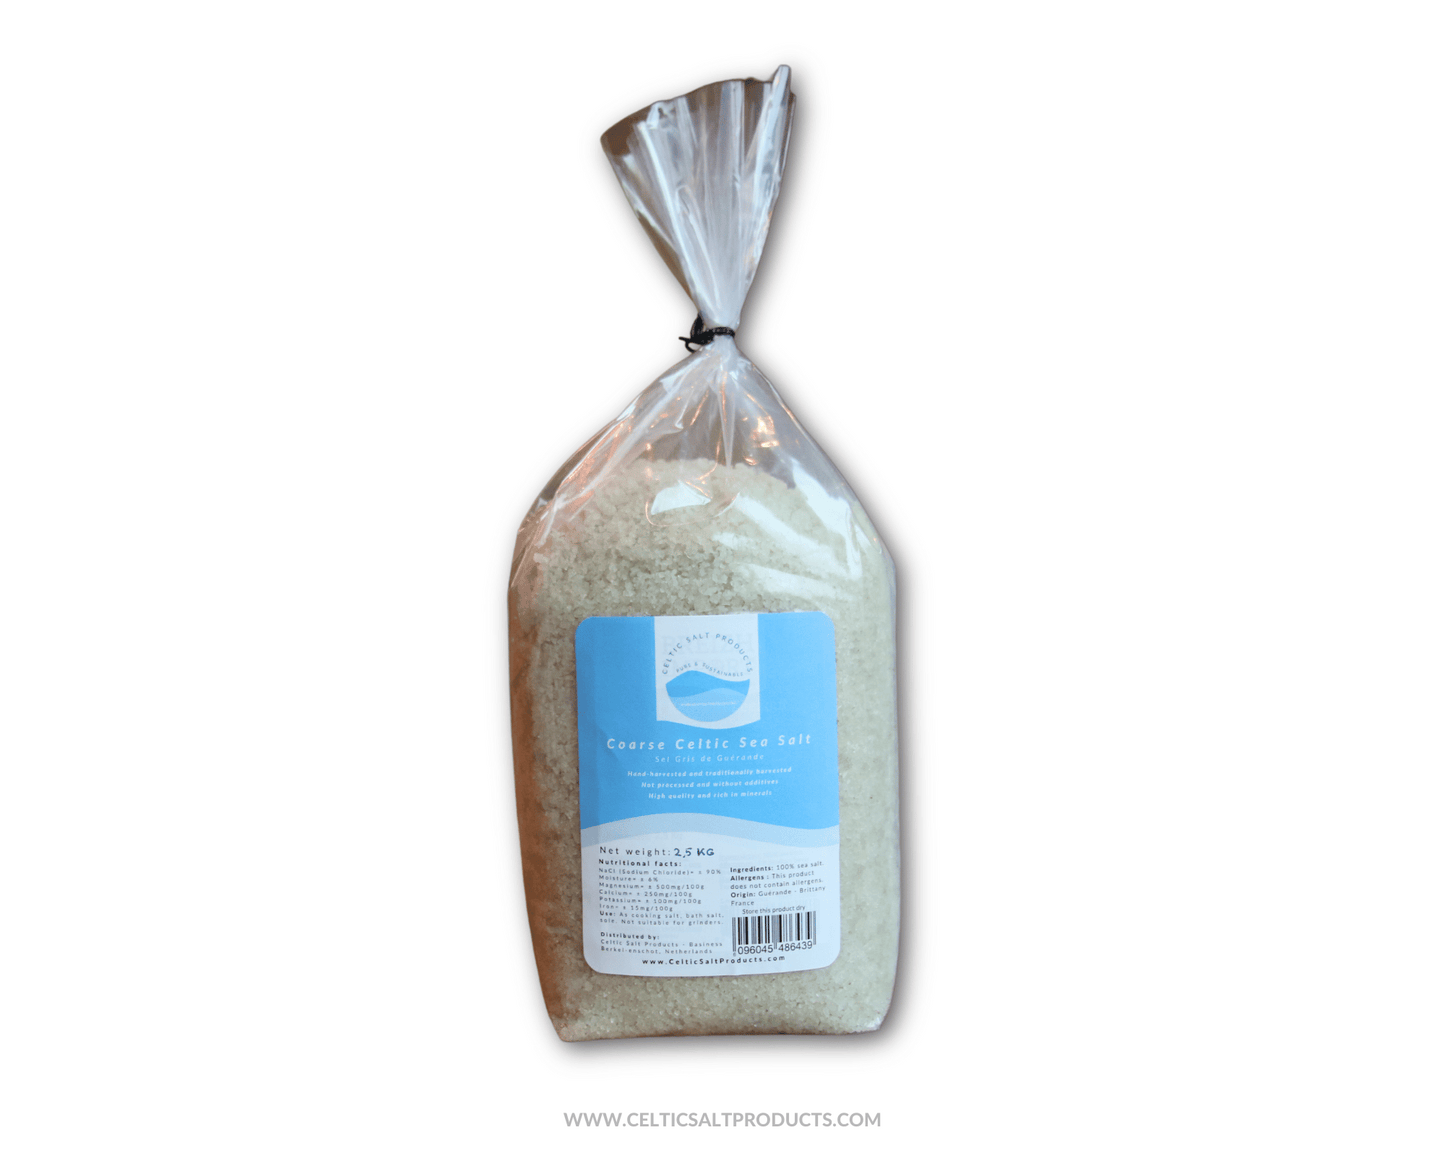 Coarse Celtic Sea Salt Organic 2.5kg